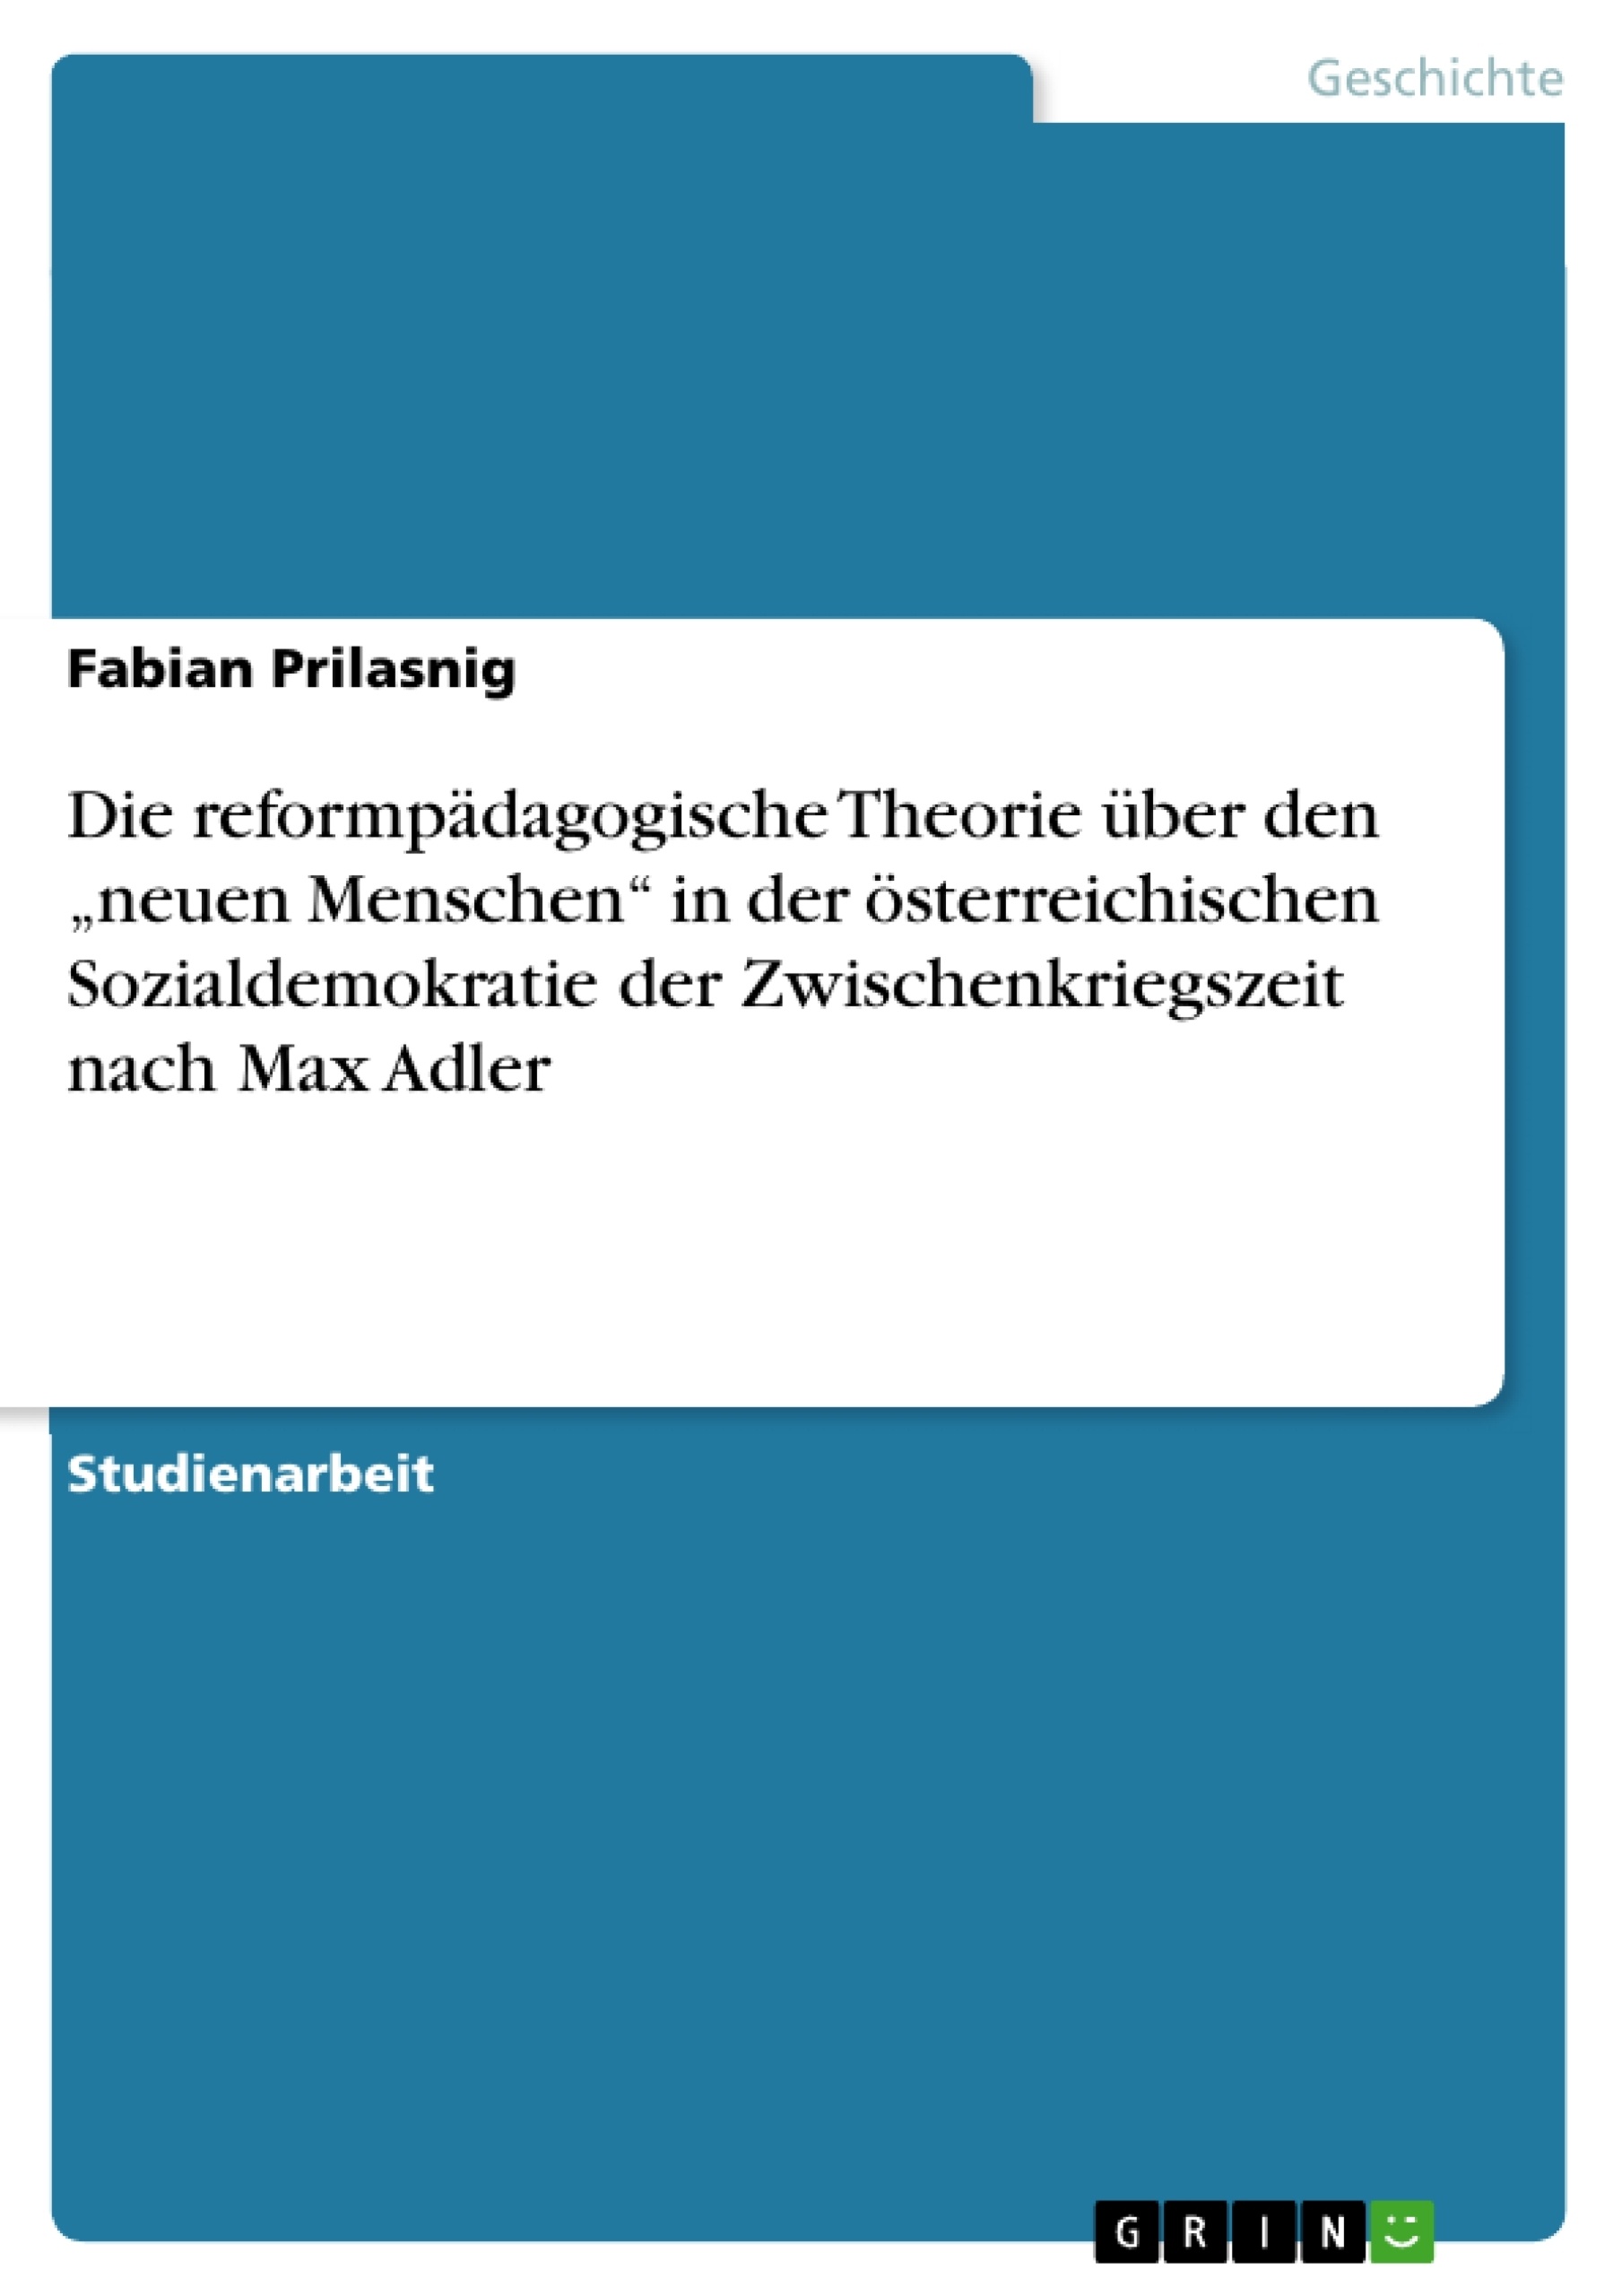 Title: Die reformpädagogische Theorie über den „neuen Menschen“ in der österreichischen Sozialdemokratie der Zwischenkriegszeit nach Max Adler